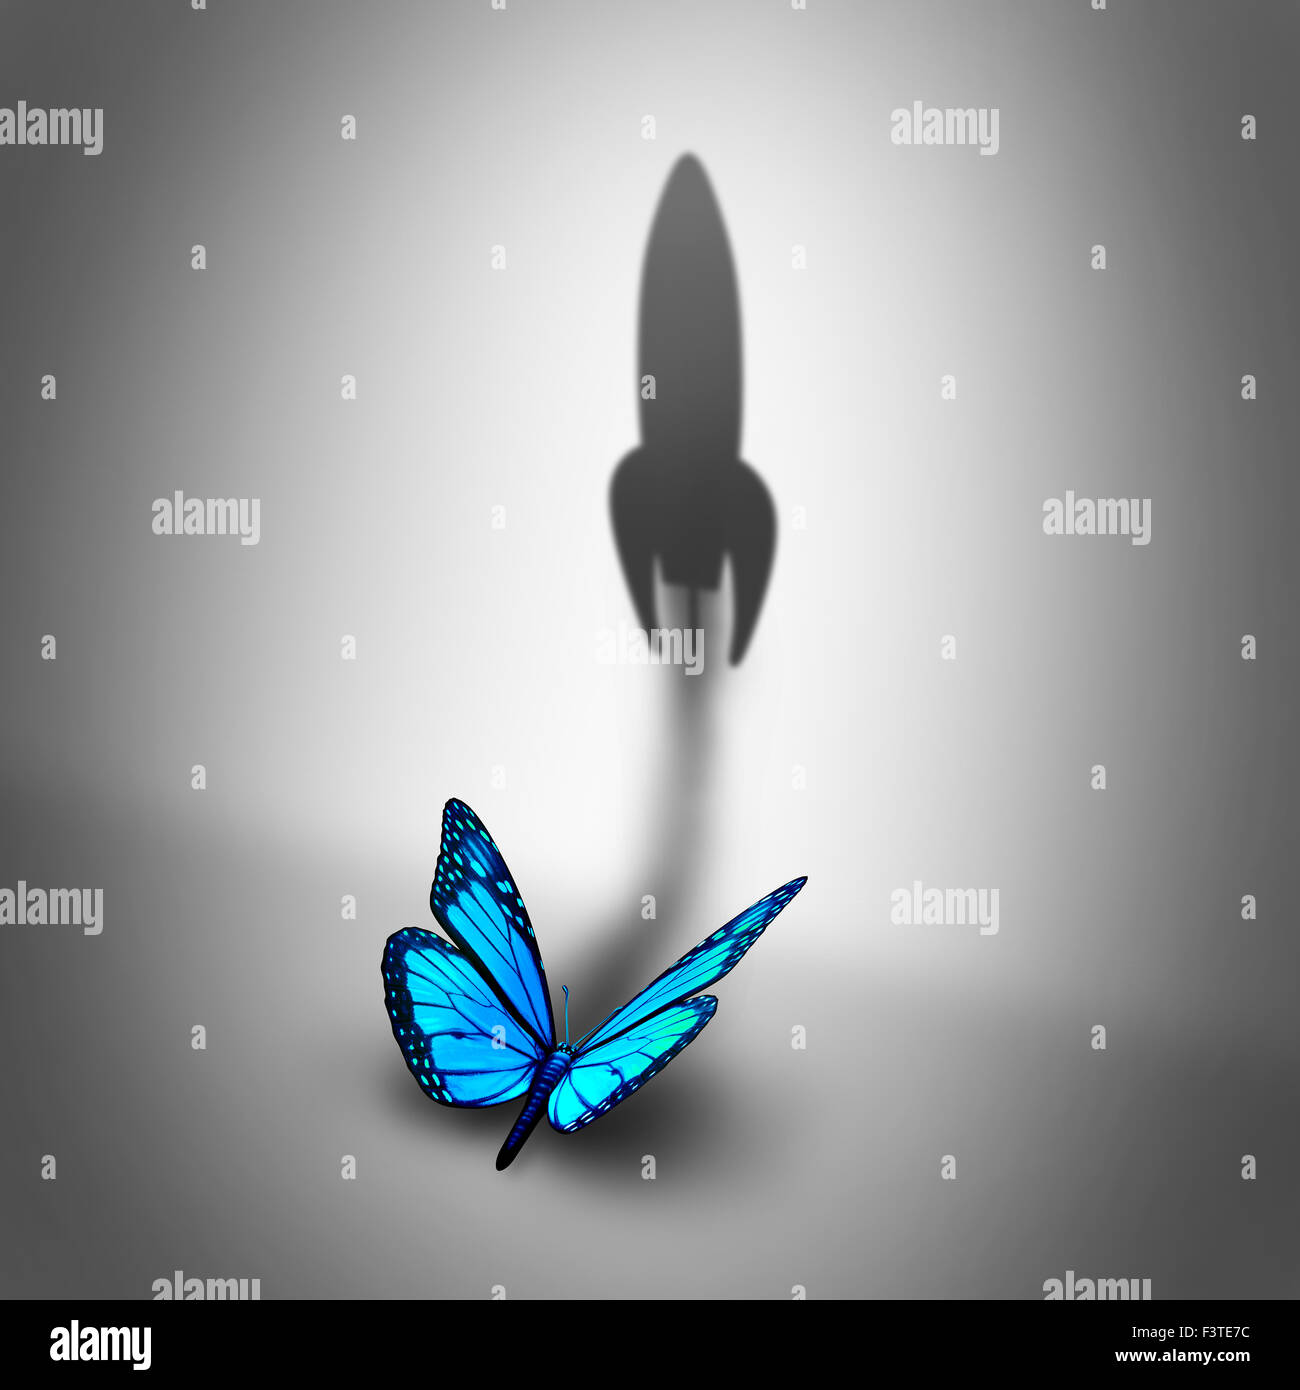 Macht streben Geschäftskonzept und entschlossenen Motivation Symbol als einen blauen Schmetterling wirft einen Schatten, geformt wie eine Rakete, die als potenzielle Metapher Erfolg wackeln. Stockfoto